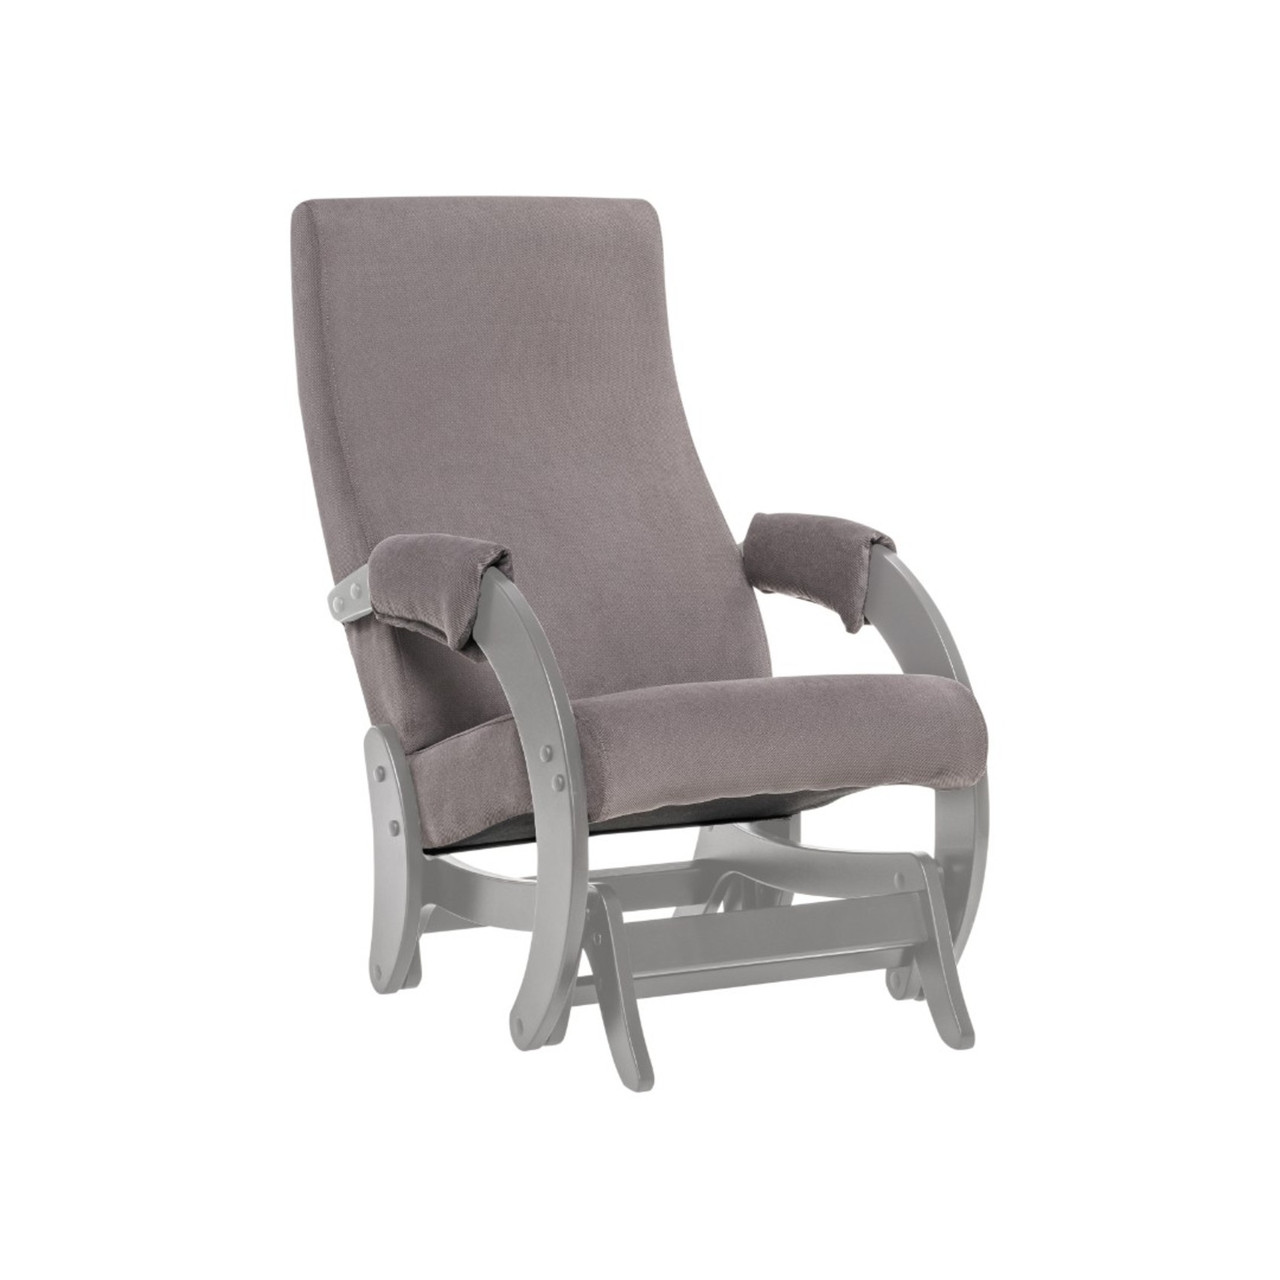 Кресло-глайдер, модель 68М Серый Ясень/Verona Antrazite Grey